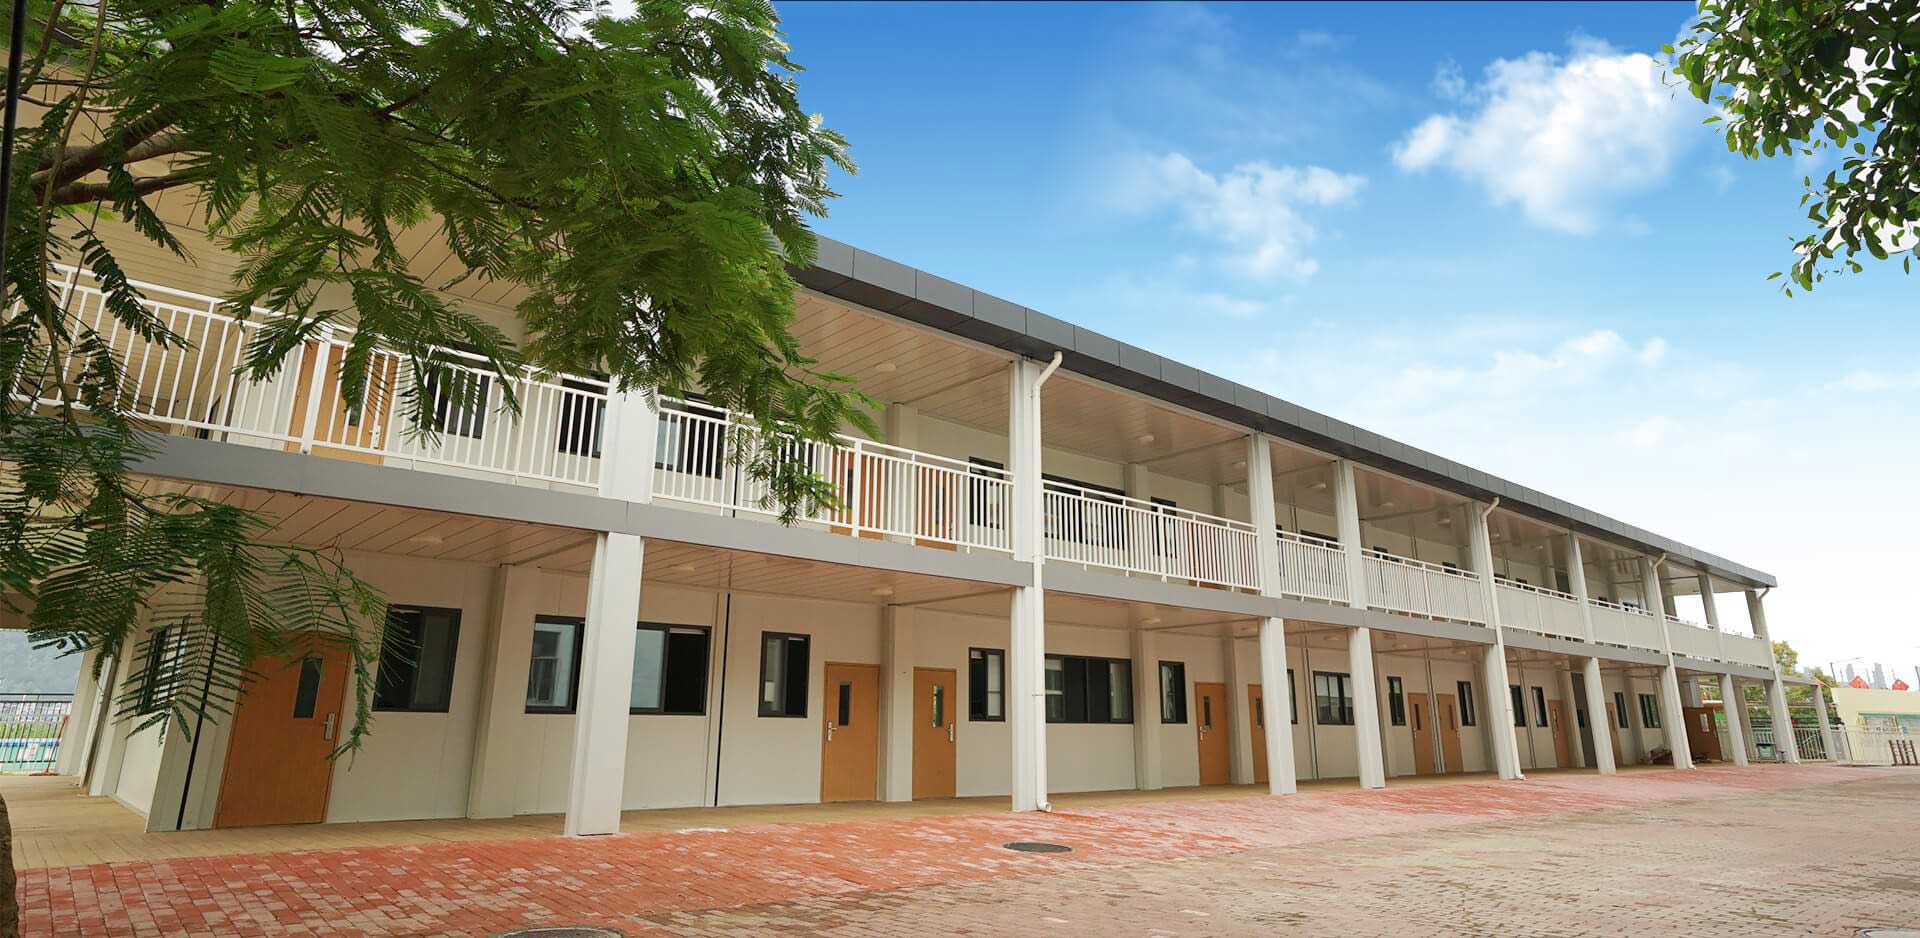 Модулна учебна сграда на началното училище Tangkeng в Шенжен